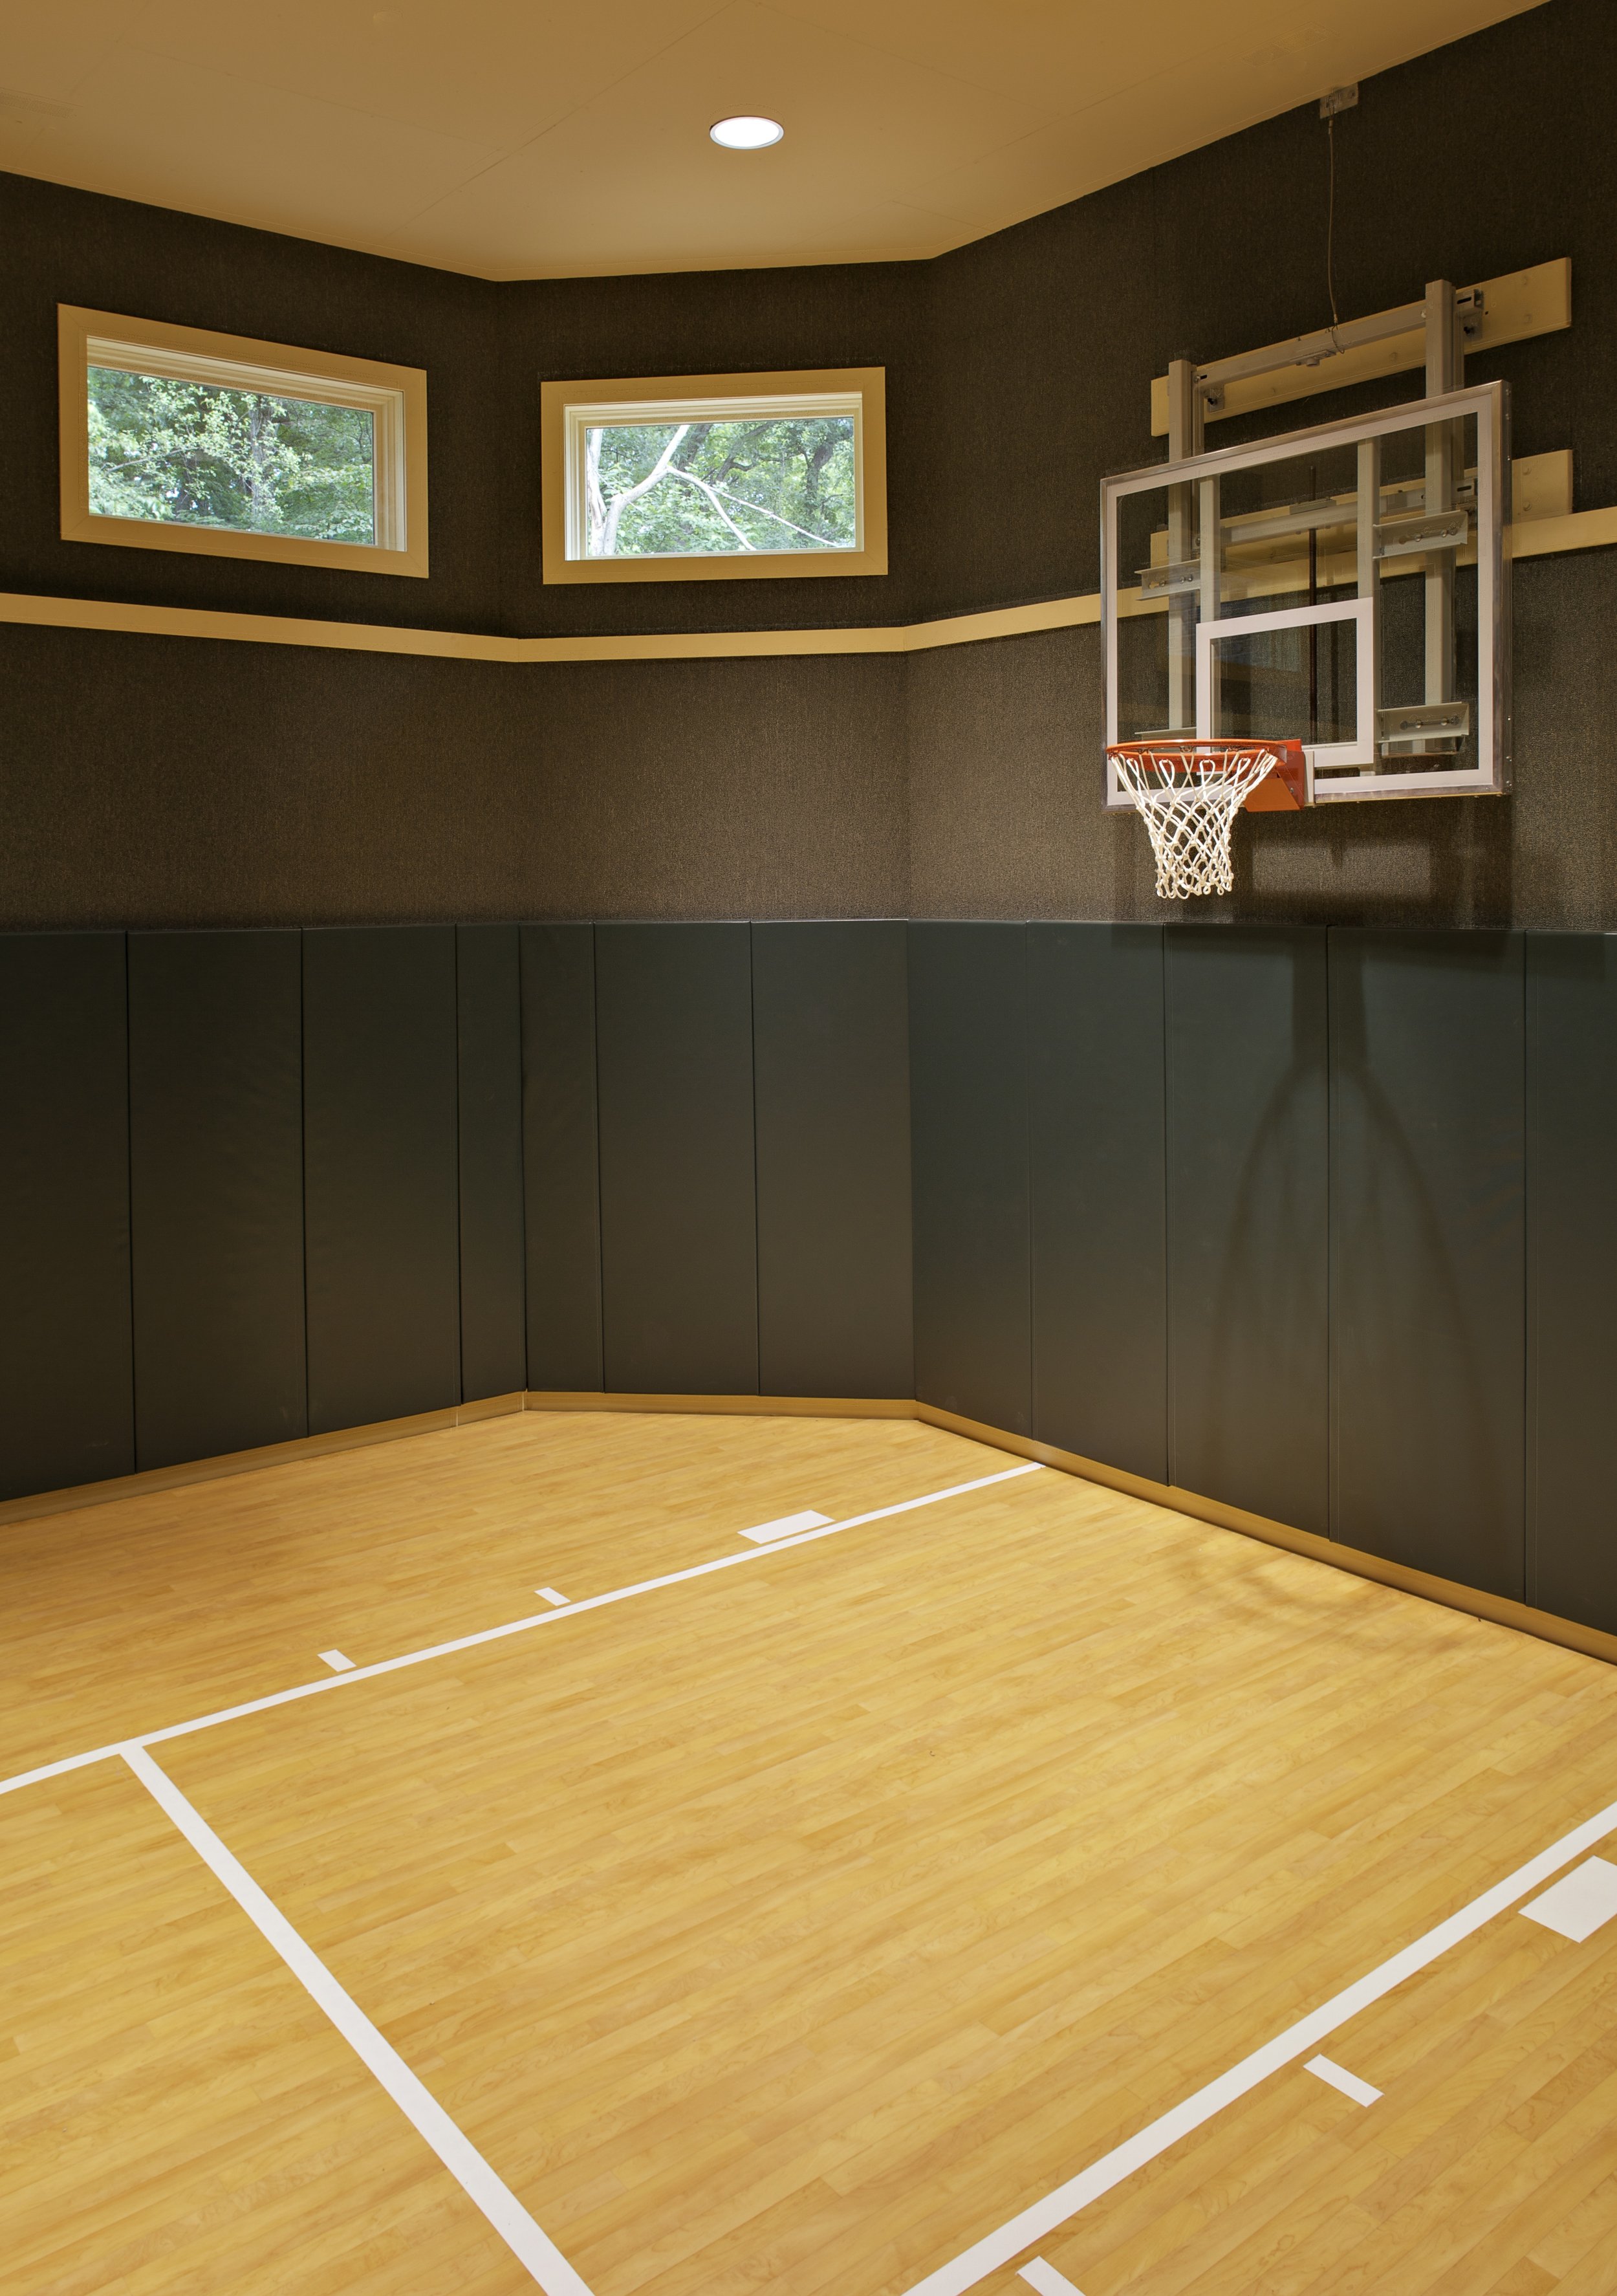 Basketball court Client copy.jpg